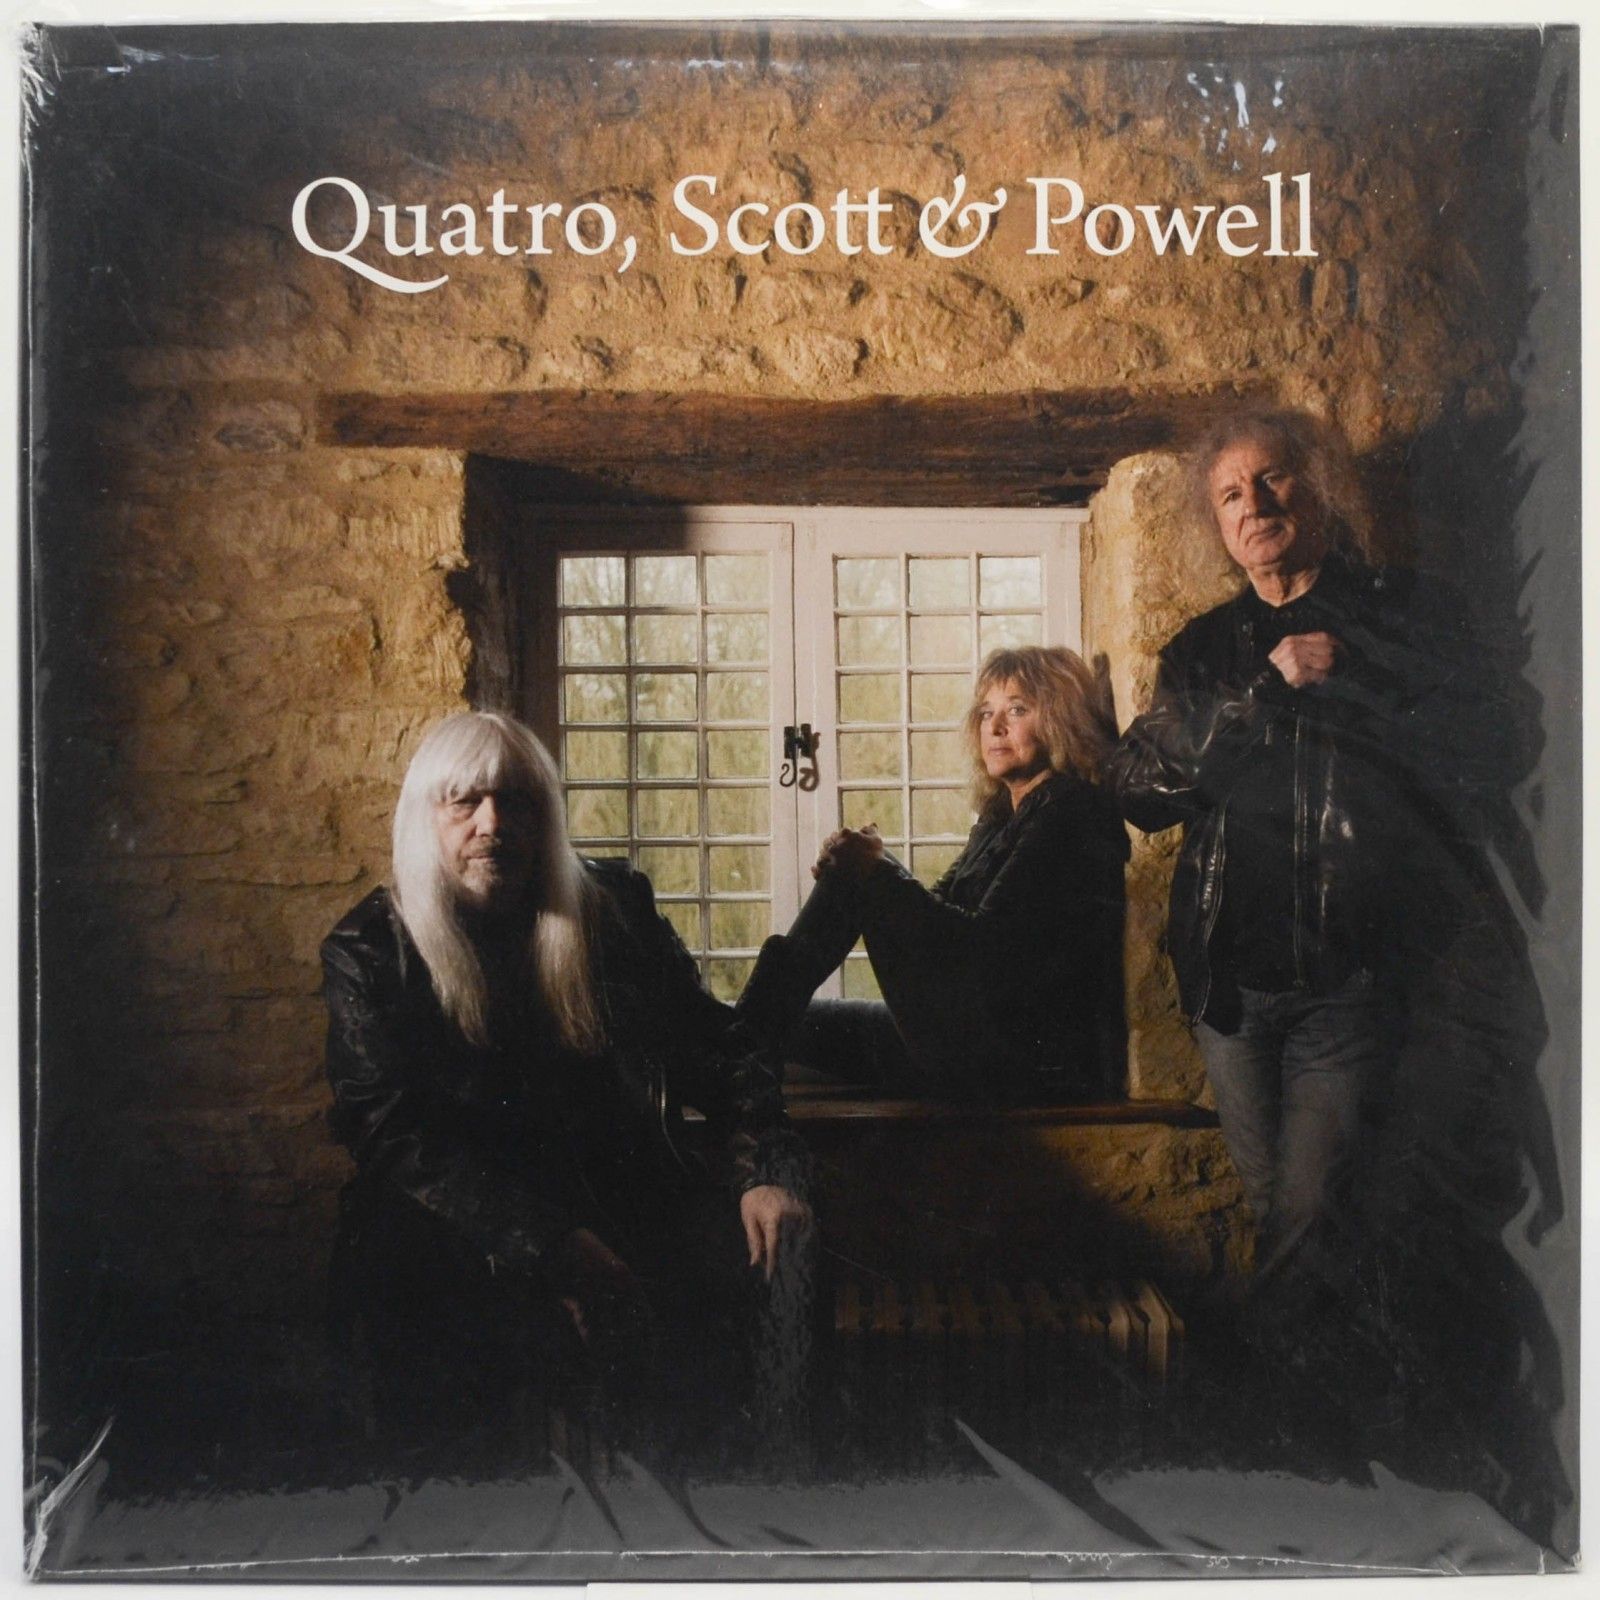 Quatro, Scott & Powell — Quatro, Scott & Powell (2LP), 2020